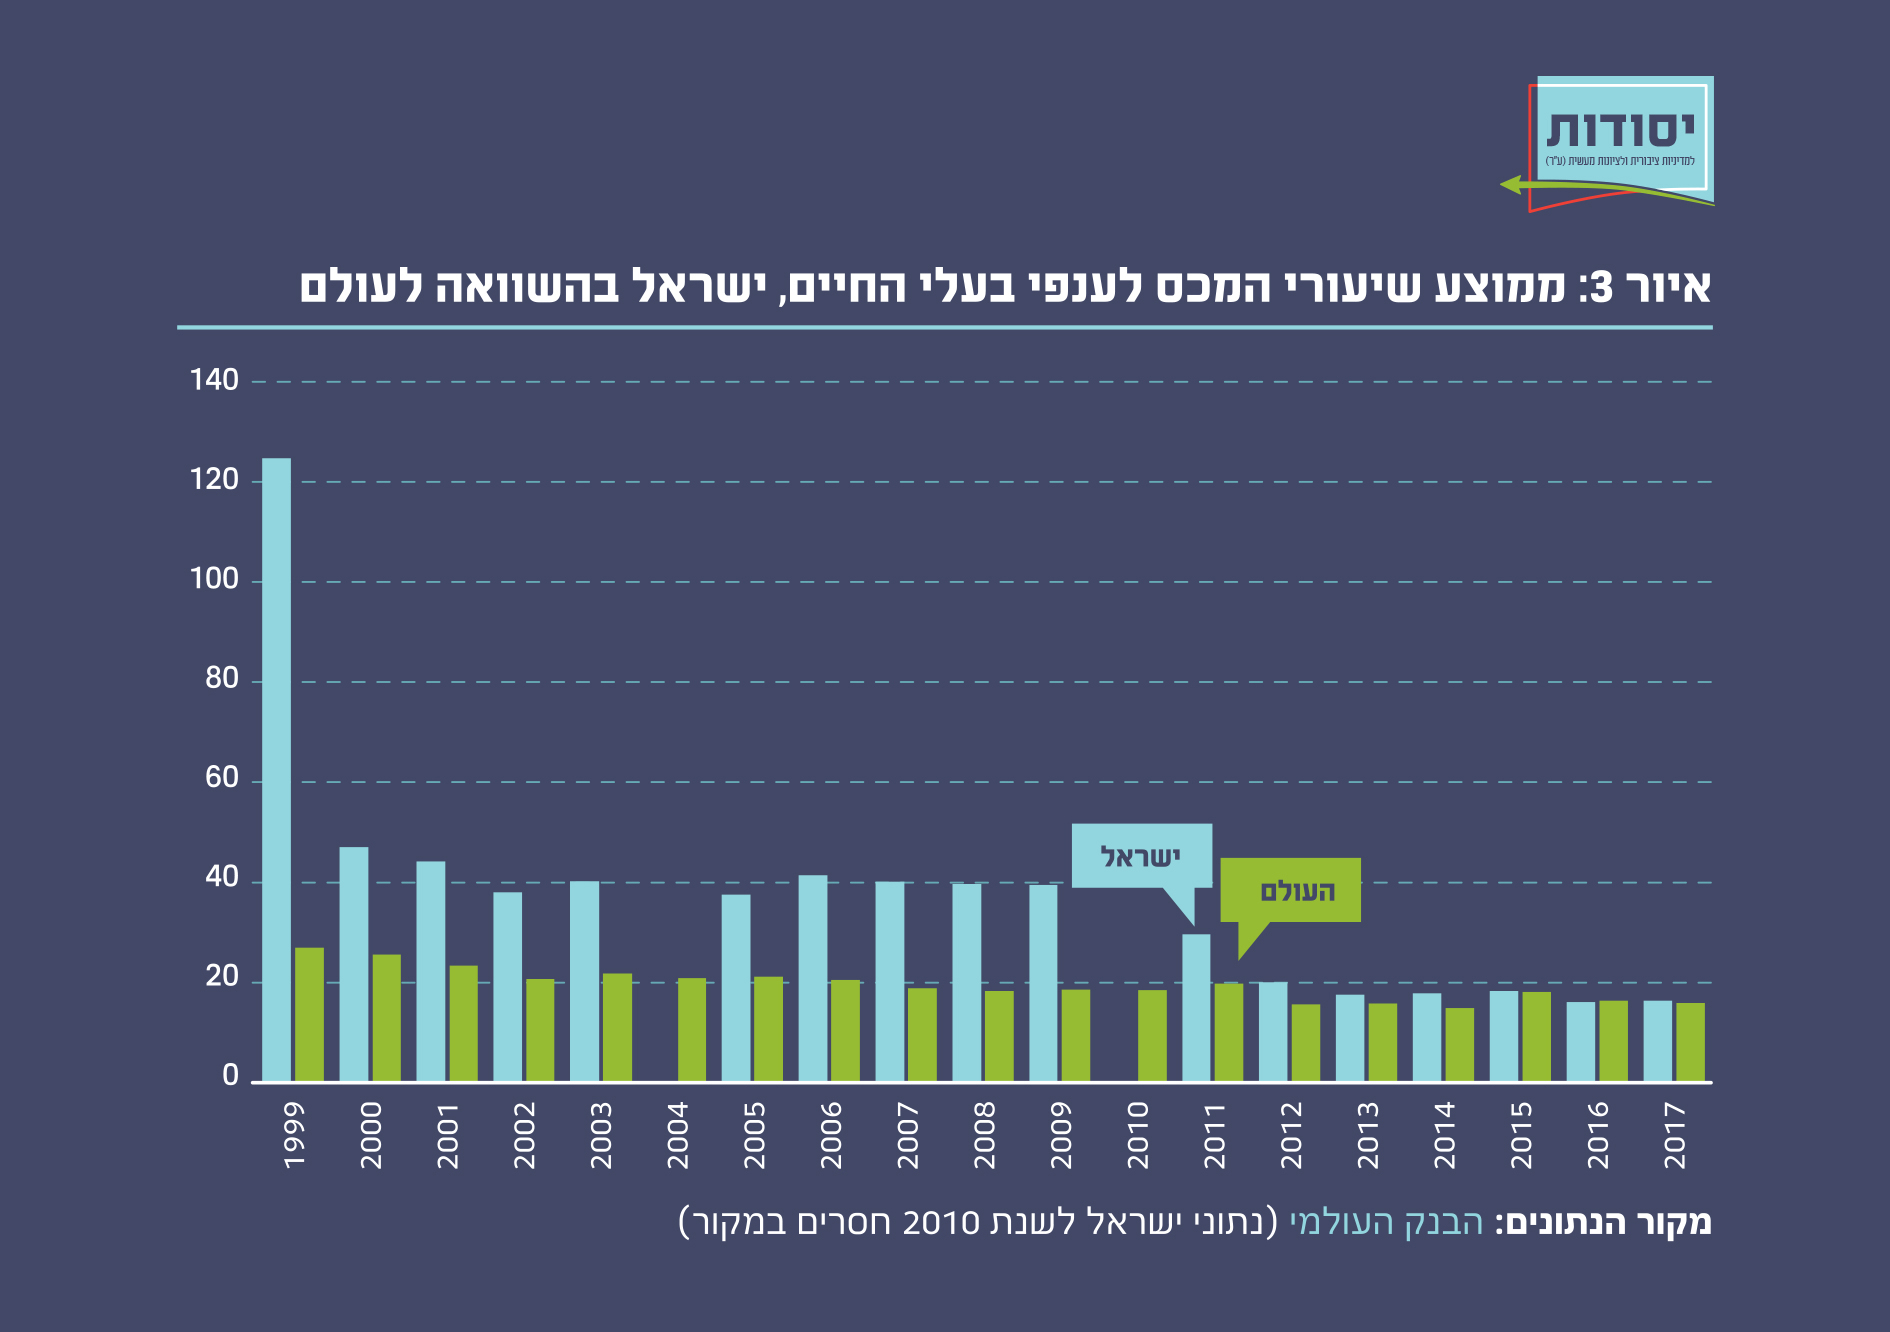 איור 3:ממוצע שיעורי המכס לענפי בעלי החיים, ישראל בהשוואה לעולם